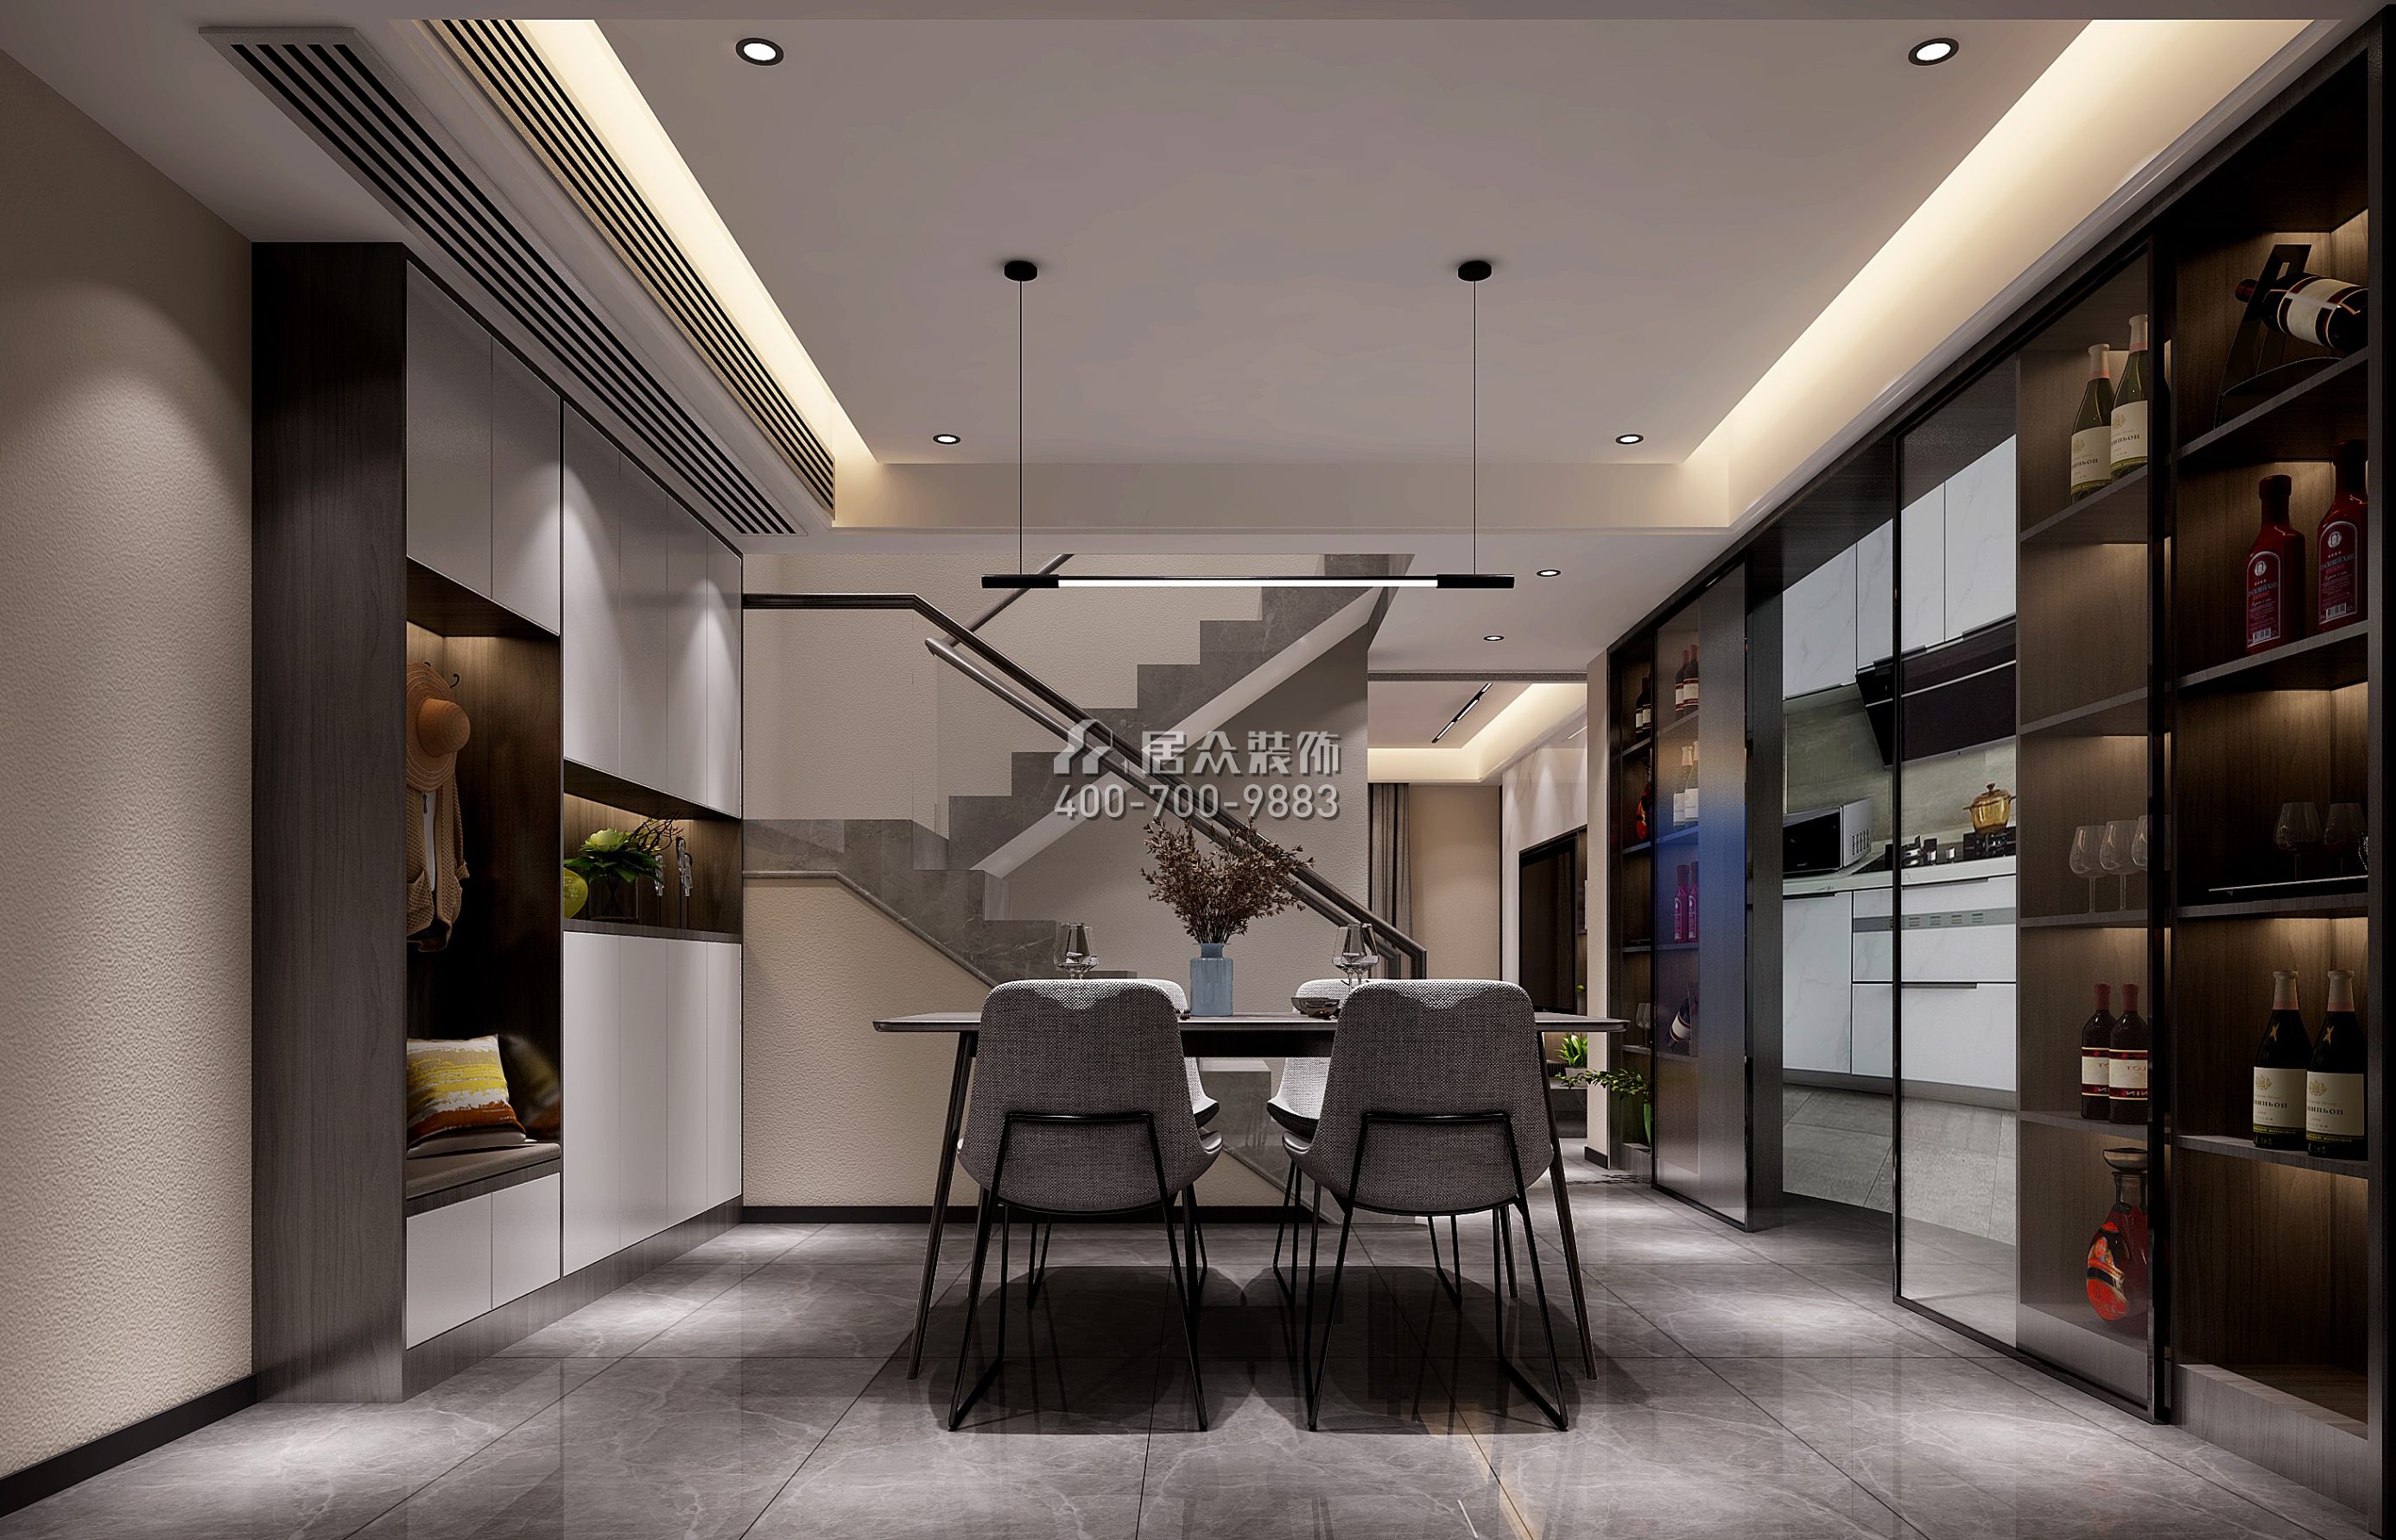 林村公寓150平方米現代簡約風格復式戶型餐廳裝修效果圖